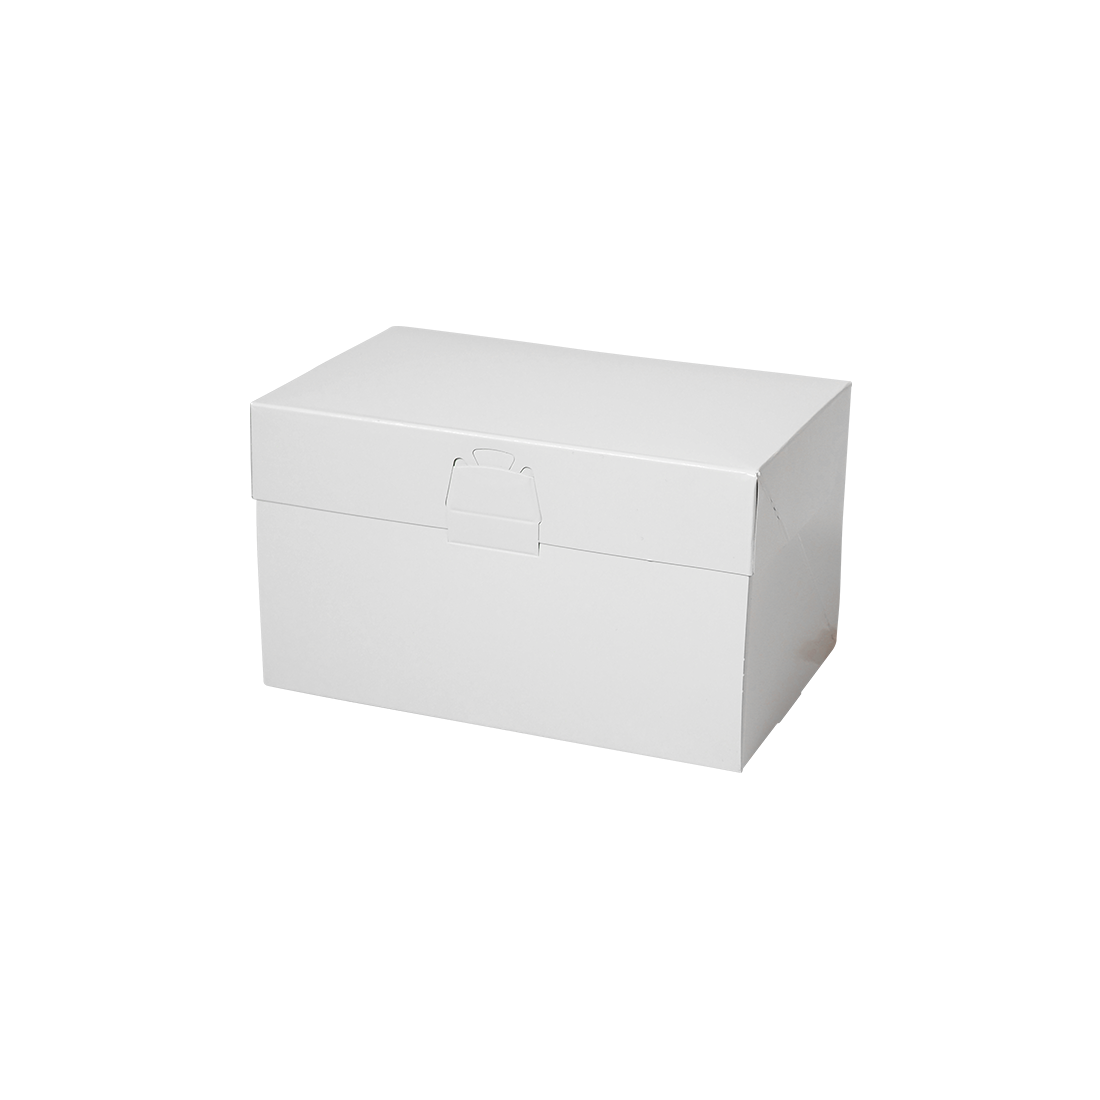 ロックBOX 105-ホワイト 4×6